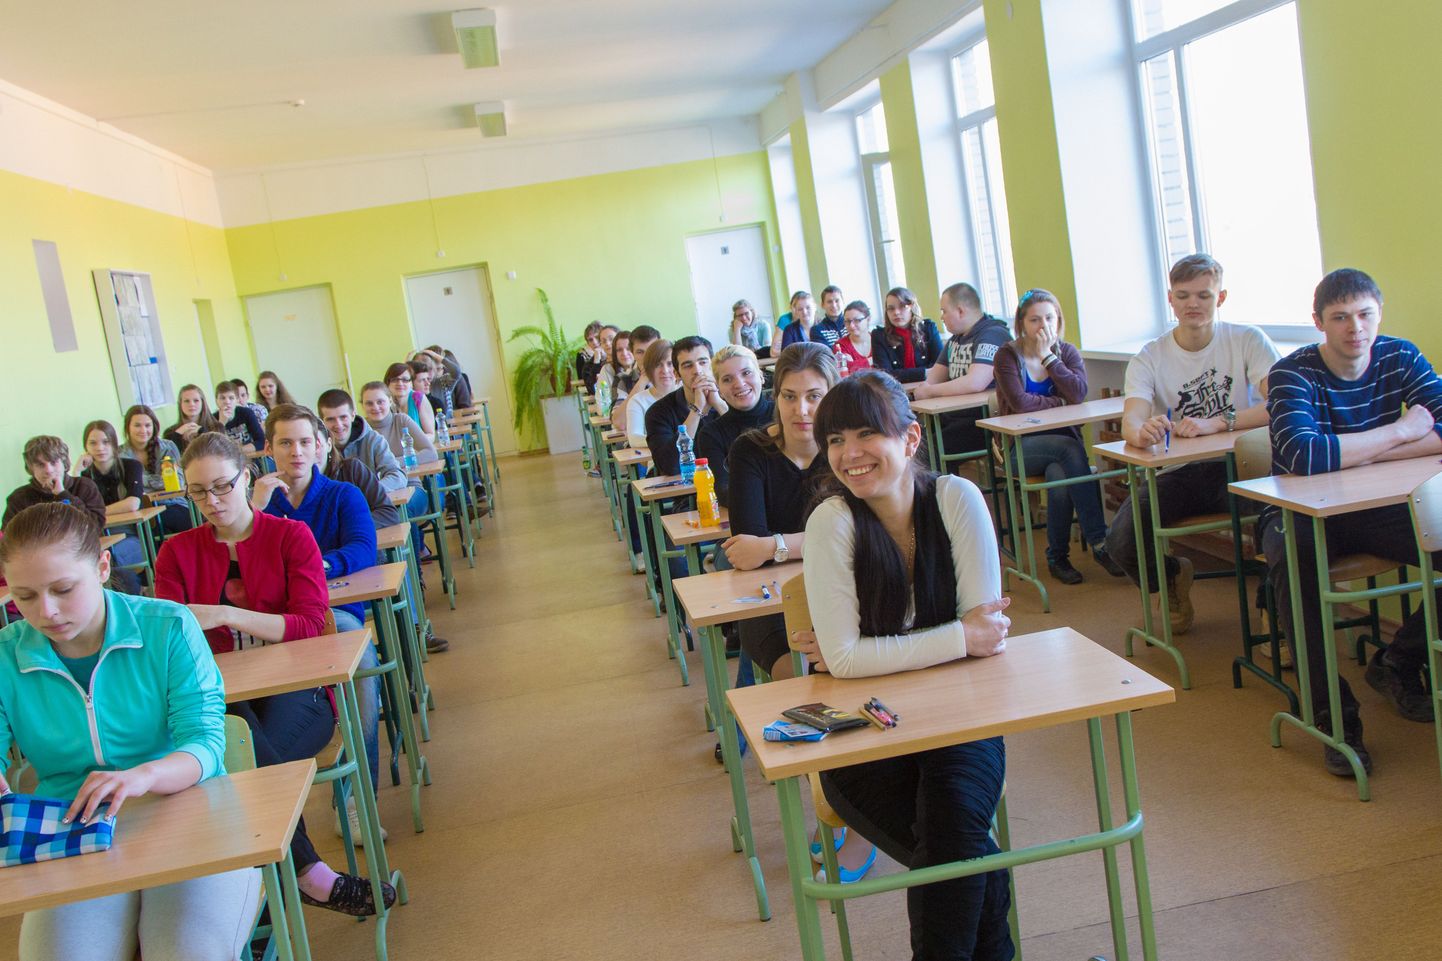 Kui veel paaril järgneval aastal sooritavad abituriendid riigieksameid ka Valga vene gümnaasiumis, siis peagi kaovad koolist nii gümnaasiumiosa kui sellega seostuv eksamisagin.